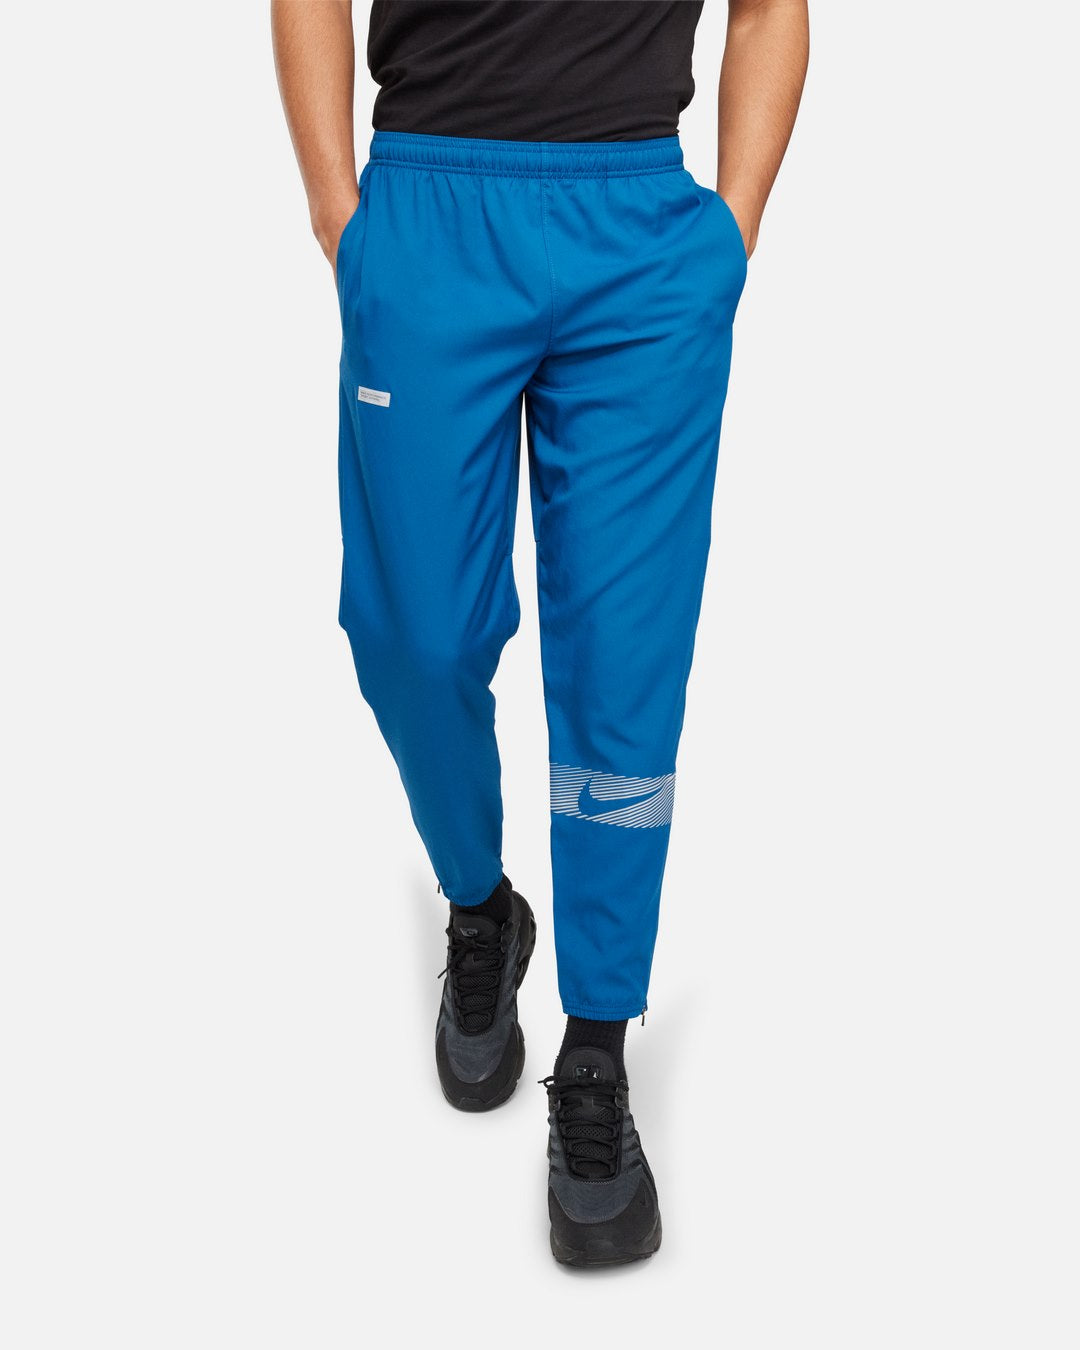 Pantalon Nike Challenger Flash - Bleu